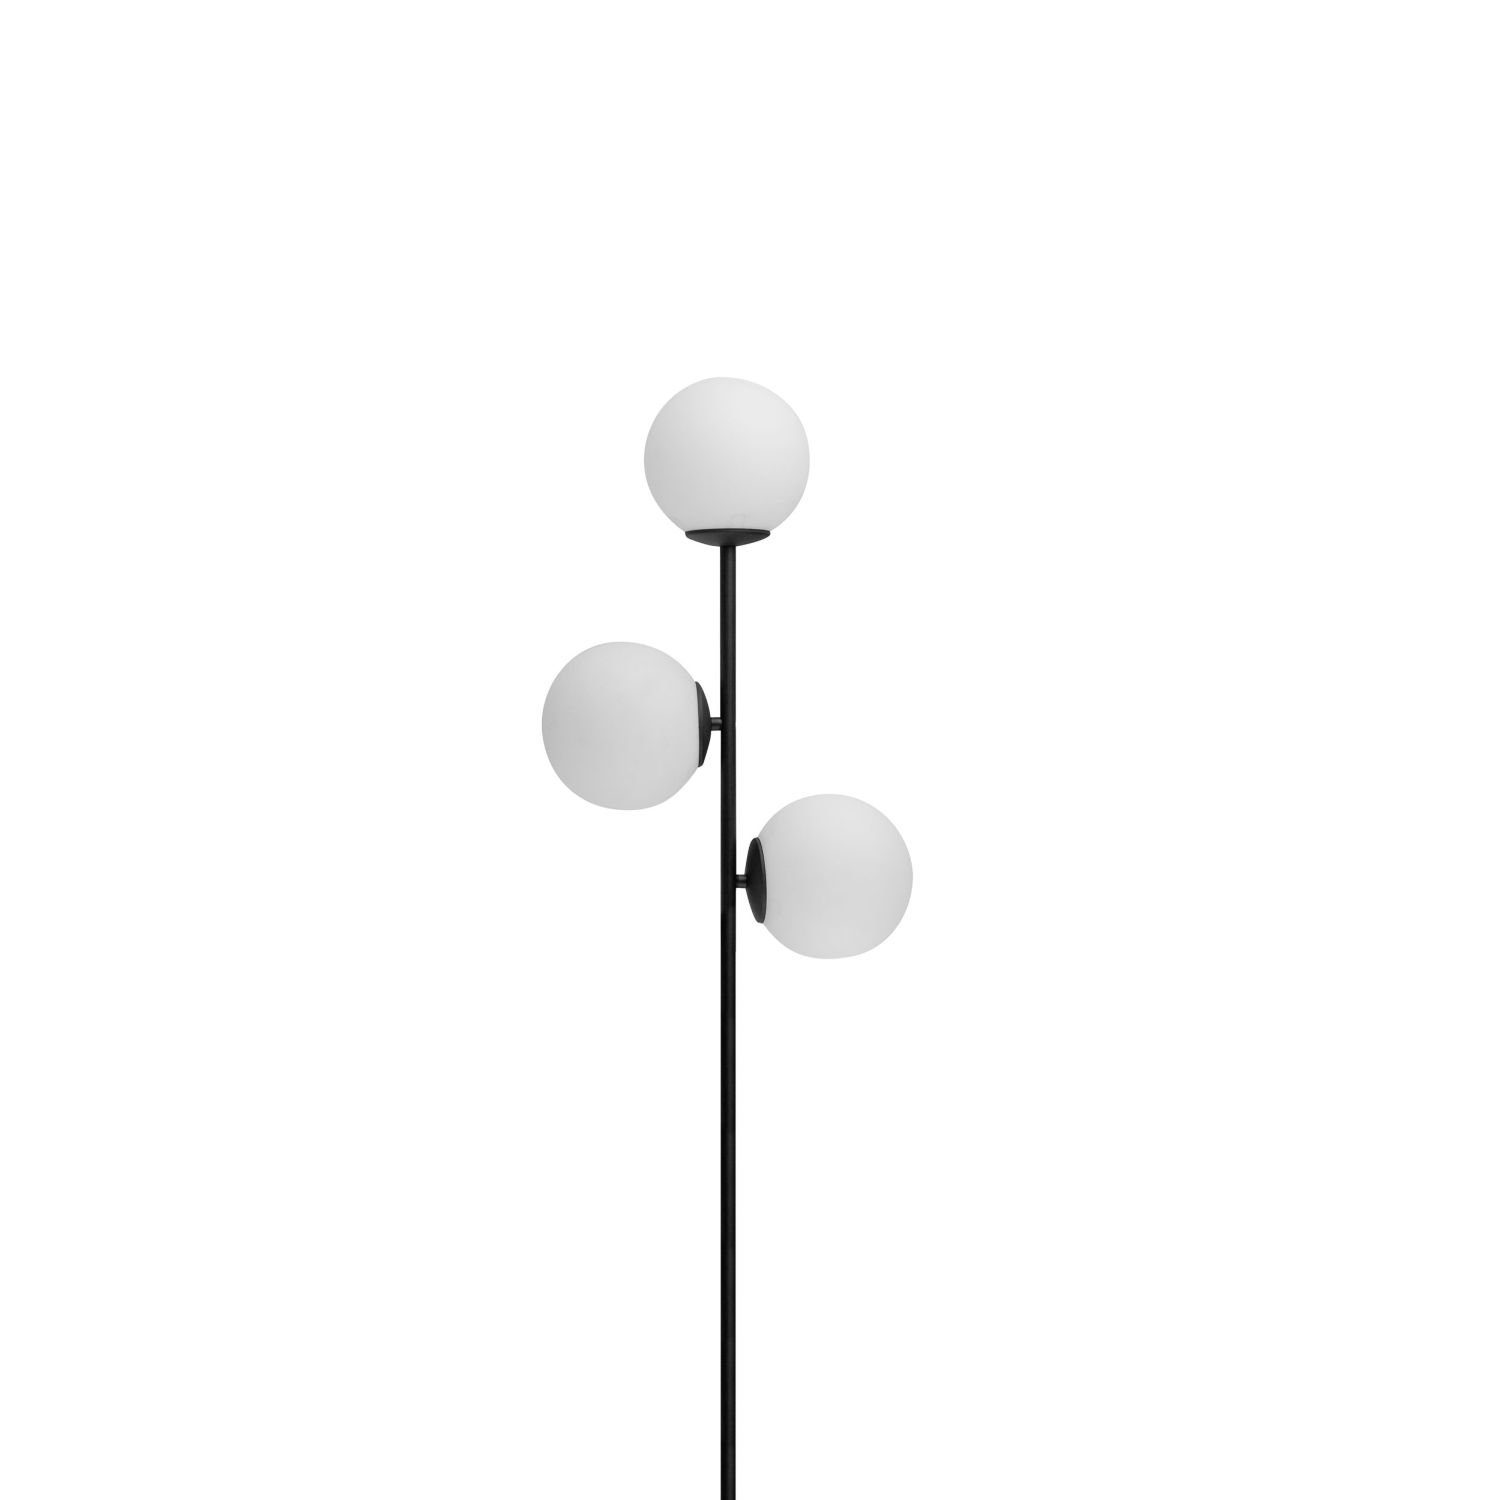 Glas ohne Modern Wohnzimmer Licht-Erlebnisse Stehlampe 3-flammig Metall Schwarz Weiß E27 PROSKO, Leuchtmittel, 165 cm